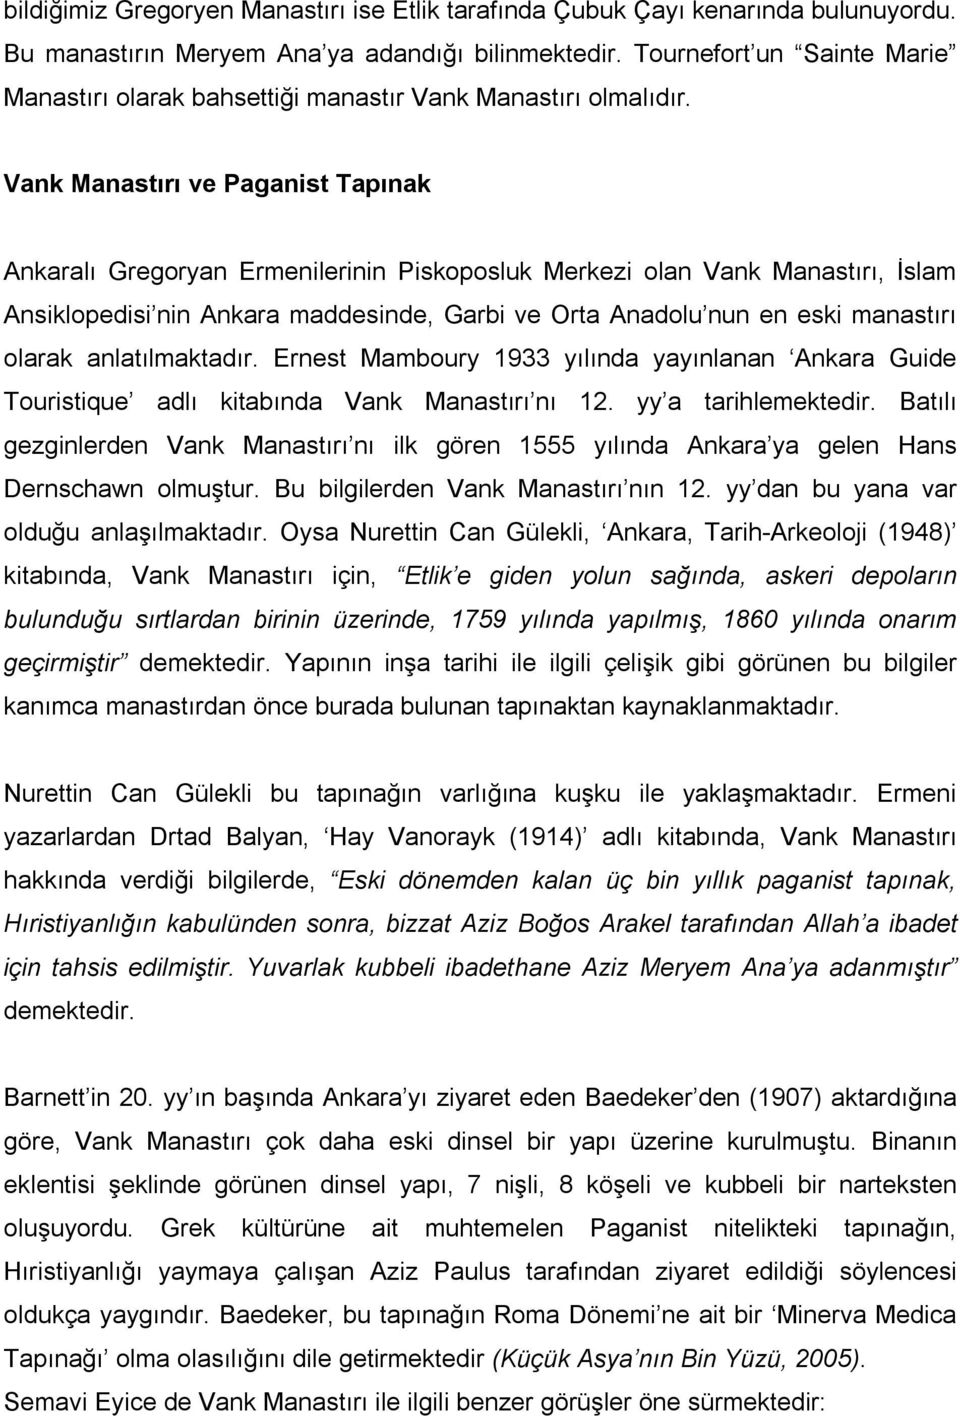 Vank Manastırı ve Paganist Tapınak Ankaralı Gregoryan Ermenilerinin Piskoposluk Merkezi olan Vank Manastırı, İslam Ansiklopedisi nin Ankara maddesinde, Garbi ve Orta Anadolu nun en eski manastırı